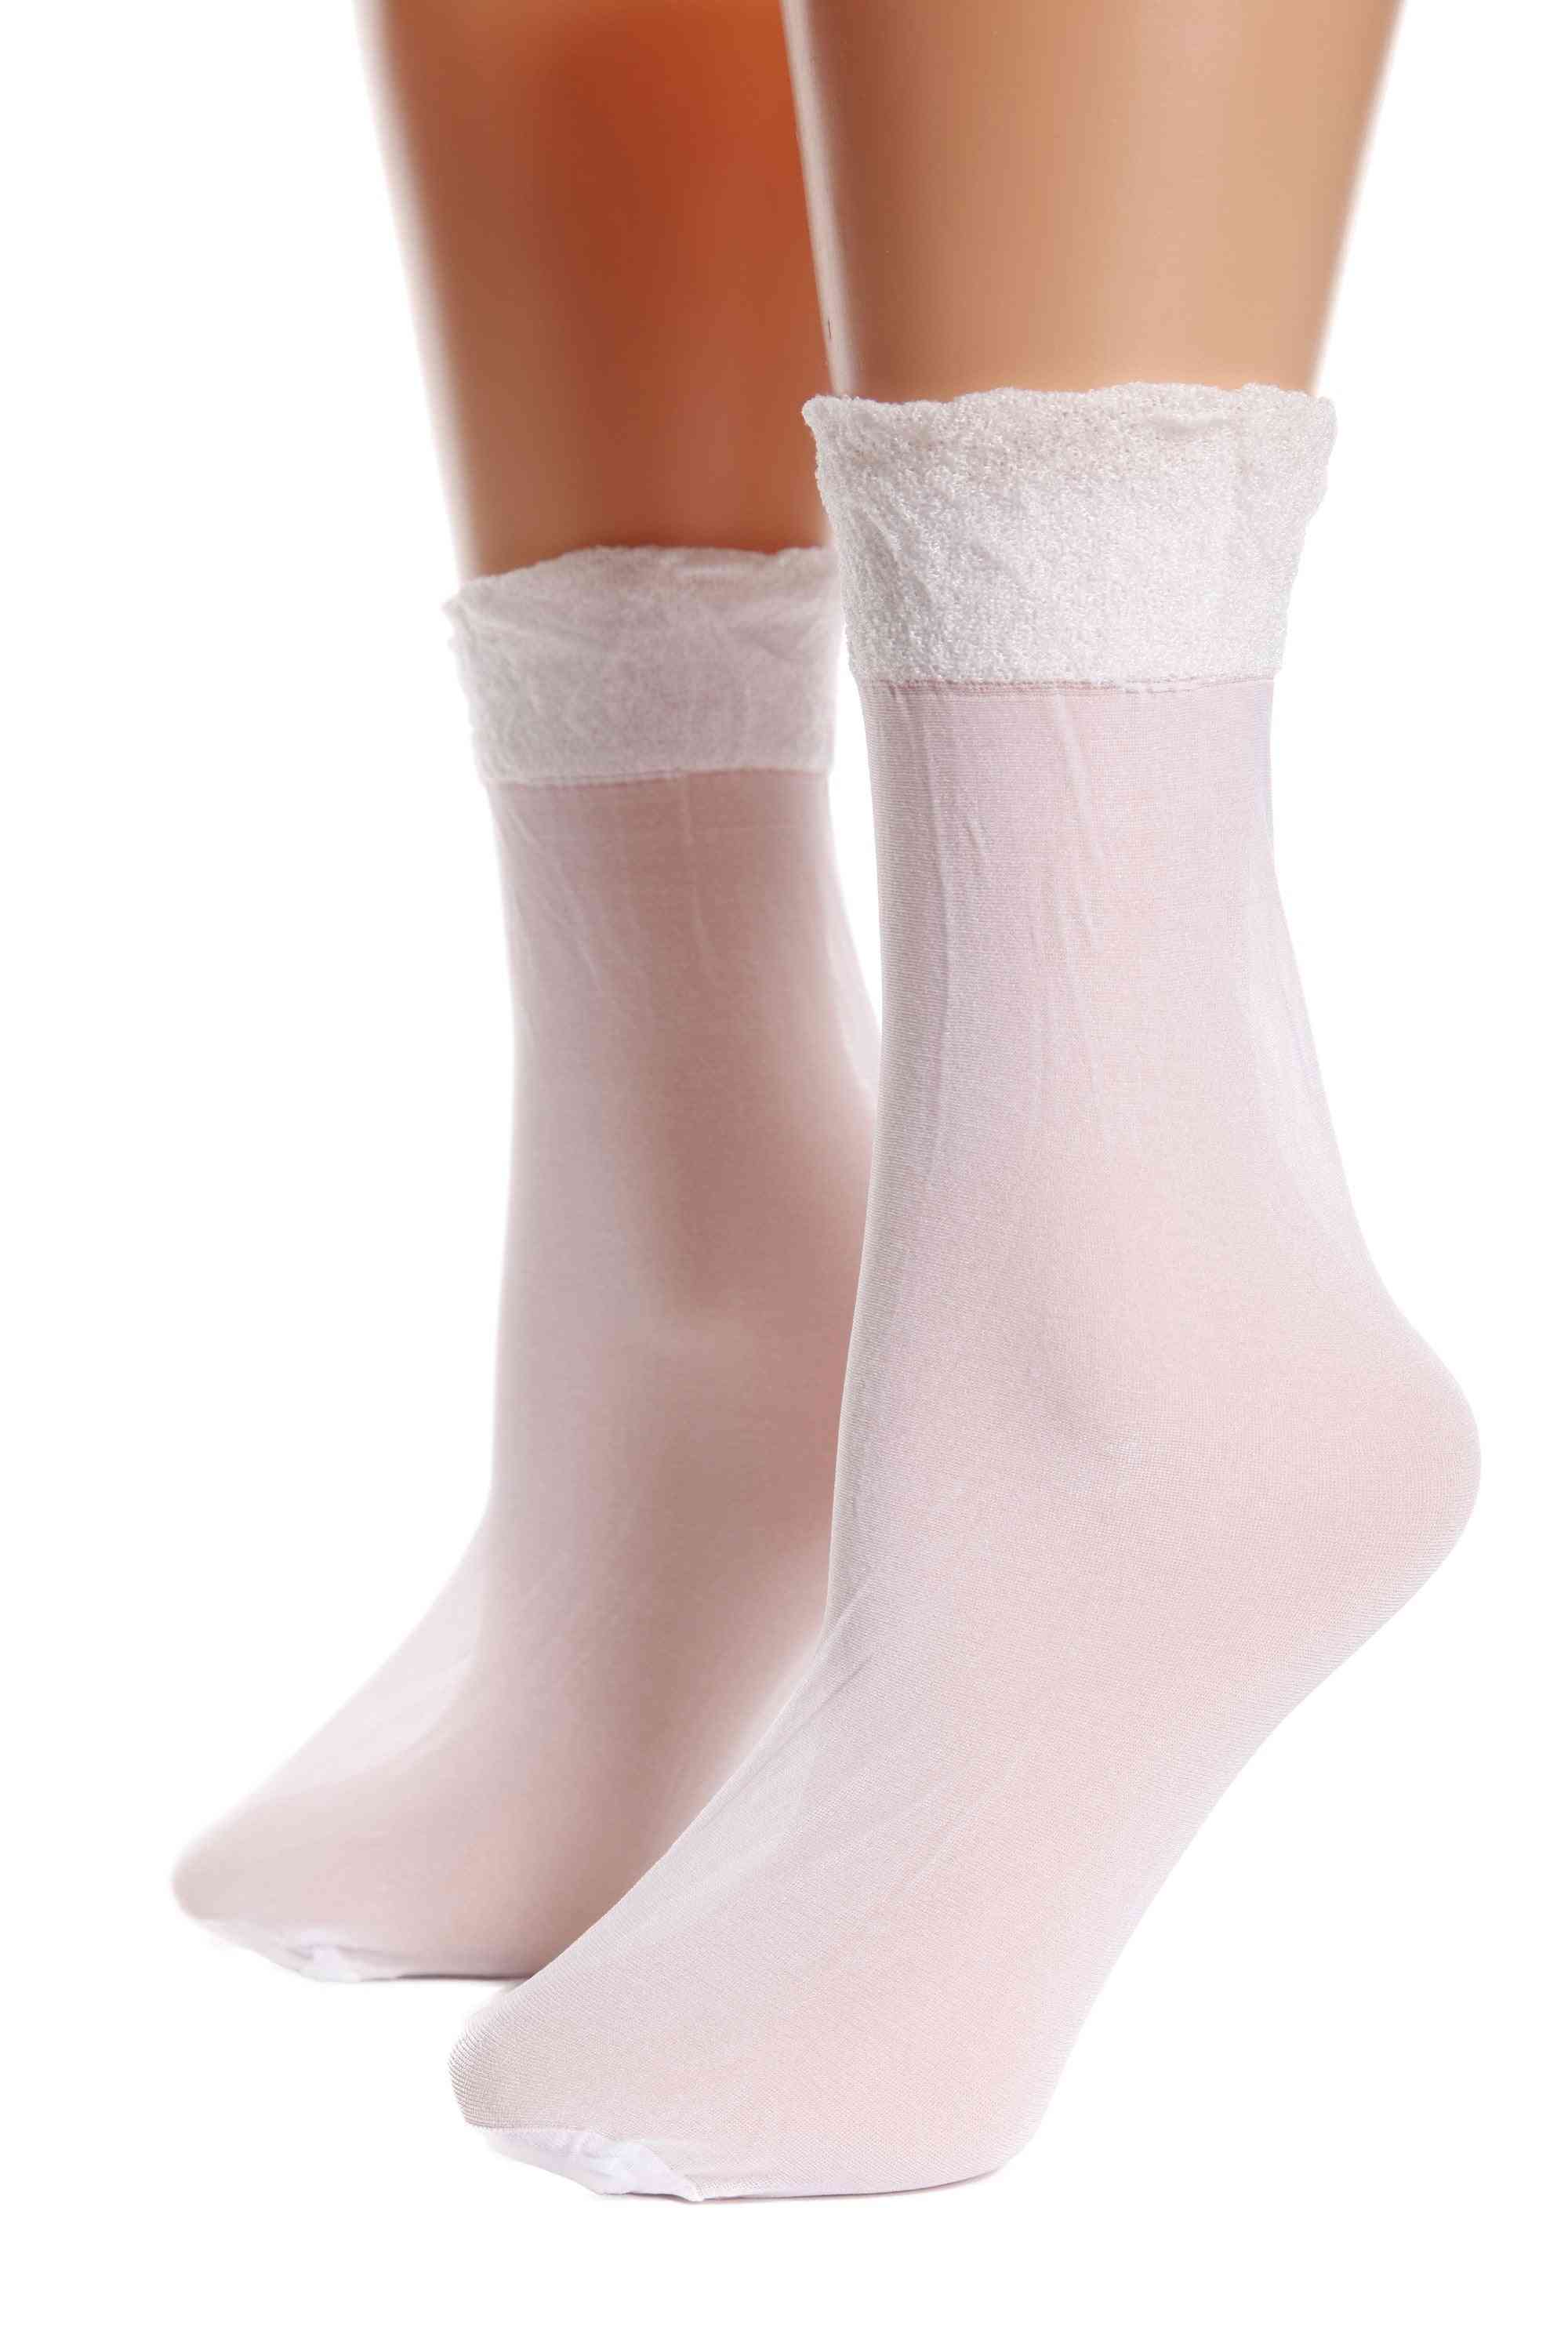 Sheer White Socks